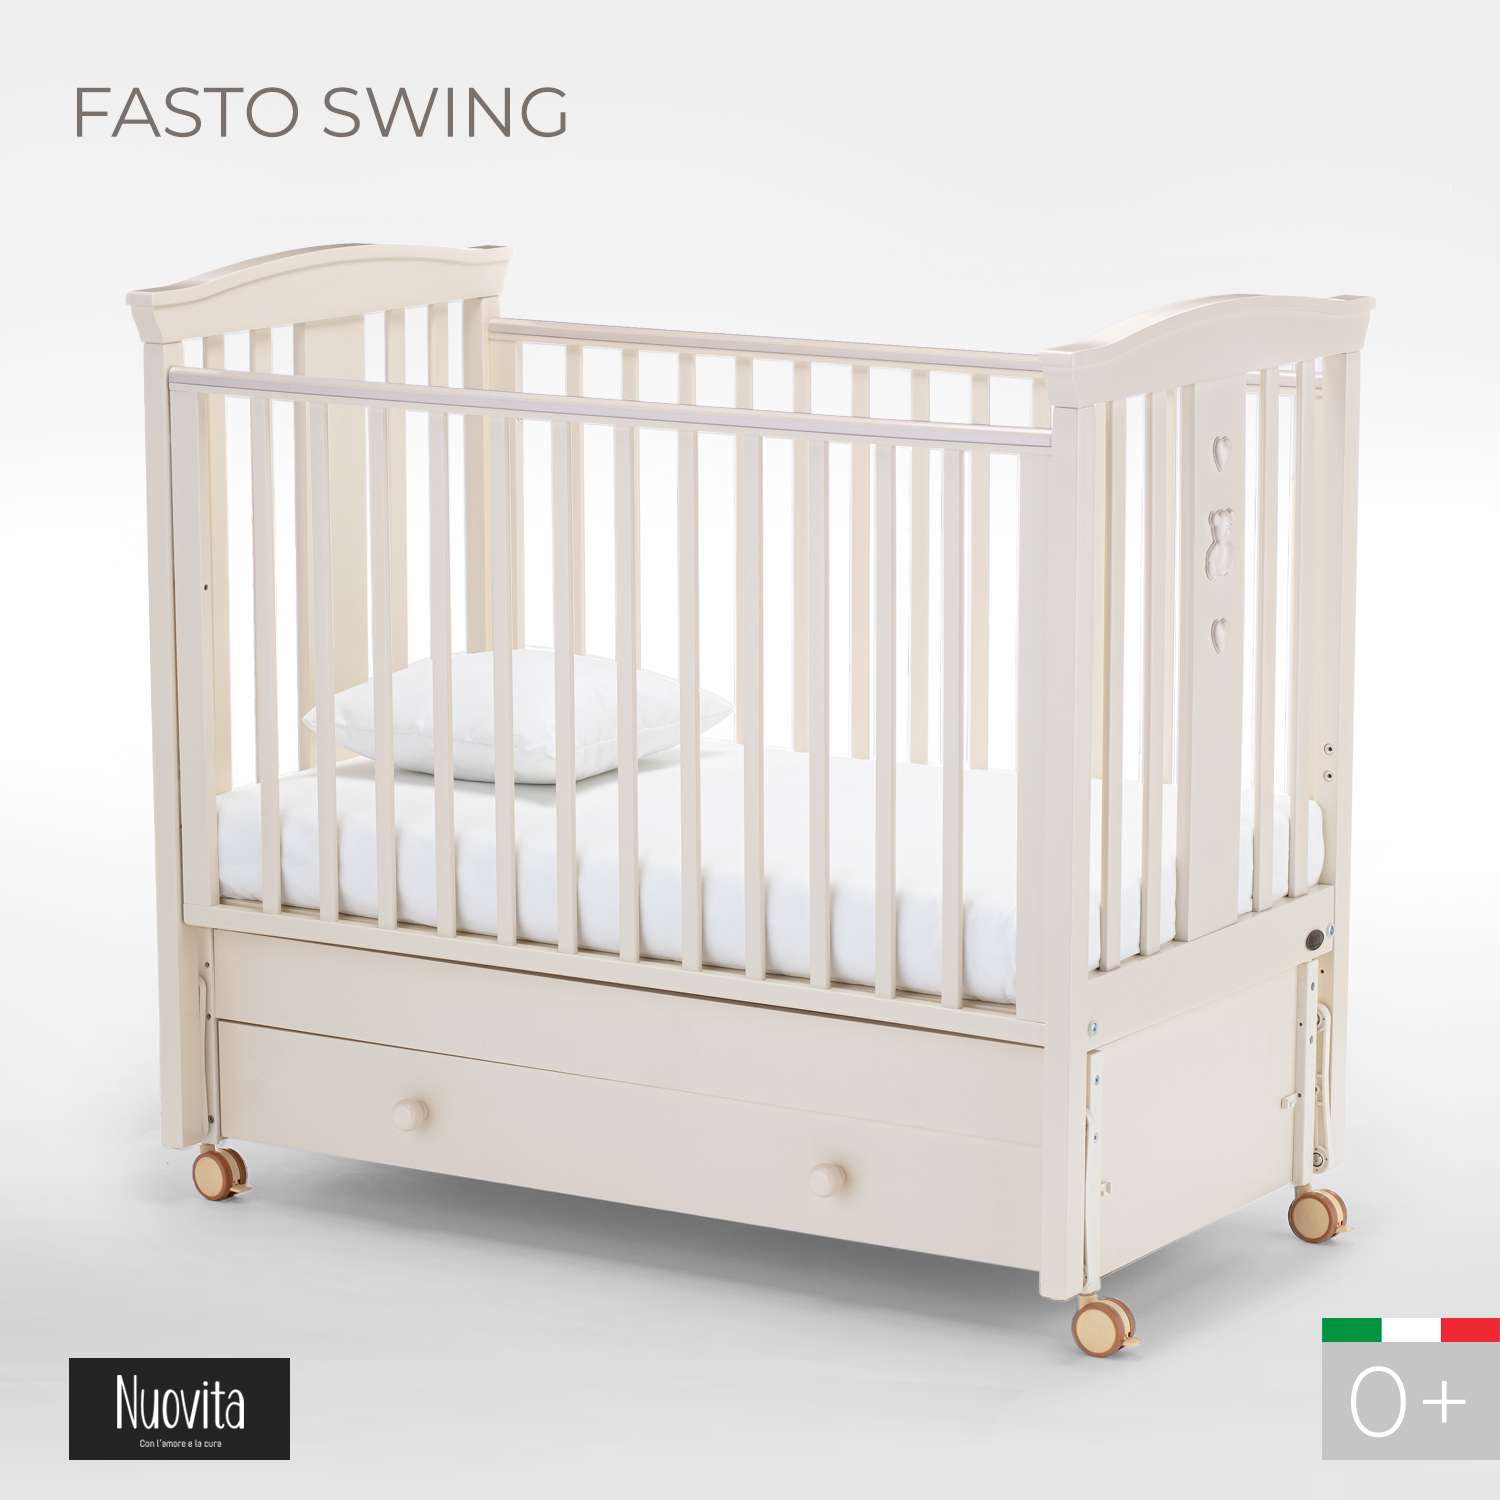 Детская кроватка Nuovita Fasto Swing прямоугольная, продольный маятник (слоновая кость) - фото 2